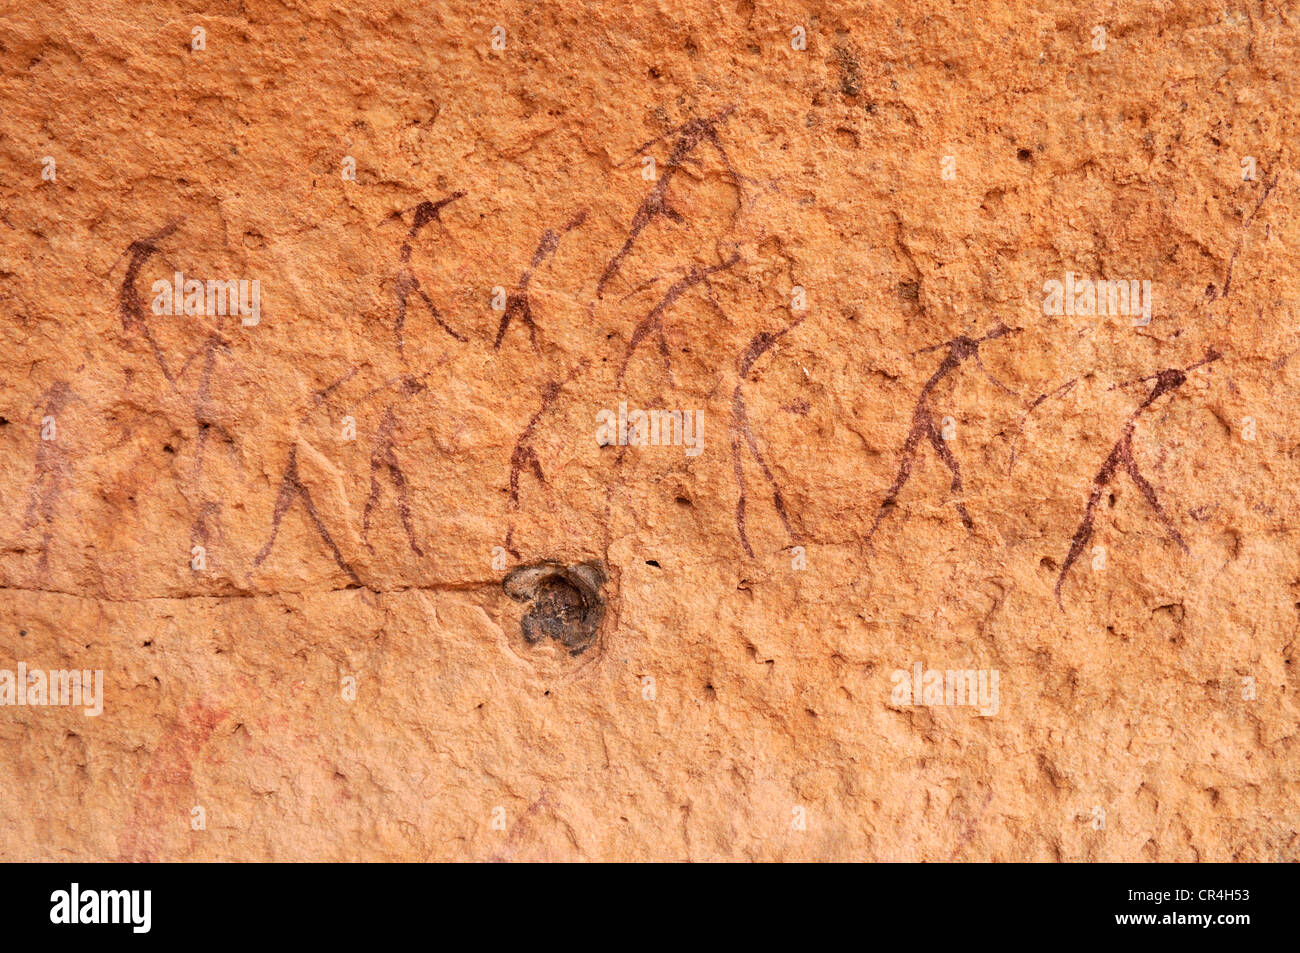 Peint d'un groupe de personnes, à Tin Meskis néolithique rockart, Adrar n'Ahnet, Algérie, Sahara, Afrique du Nord Banque D'Images